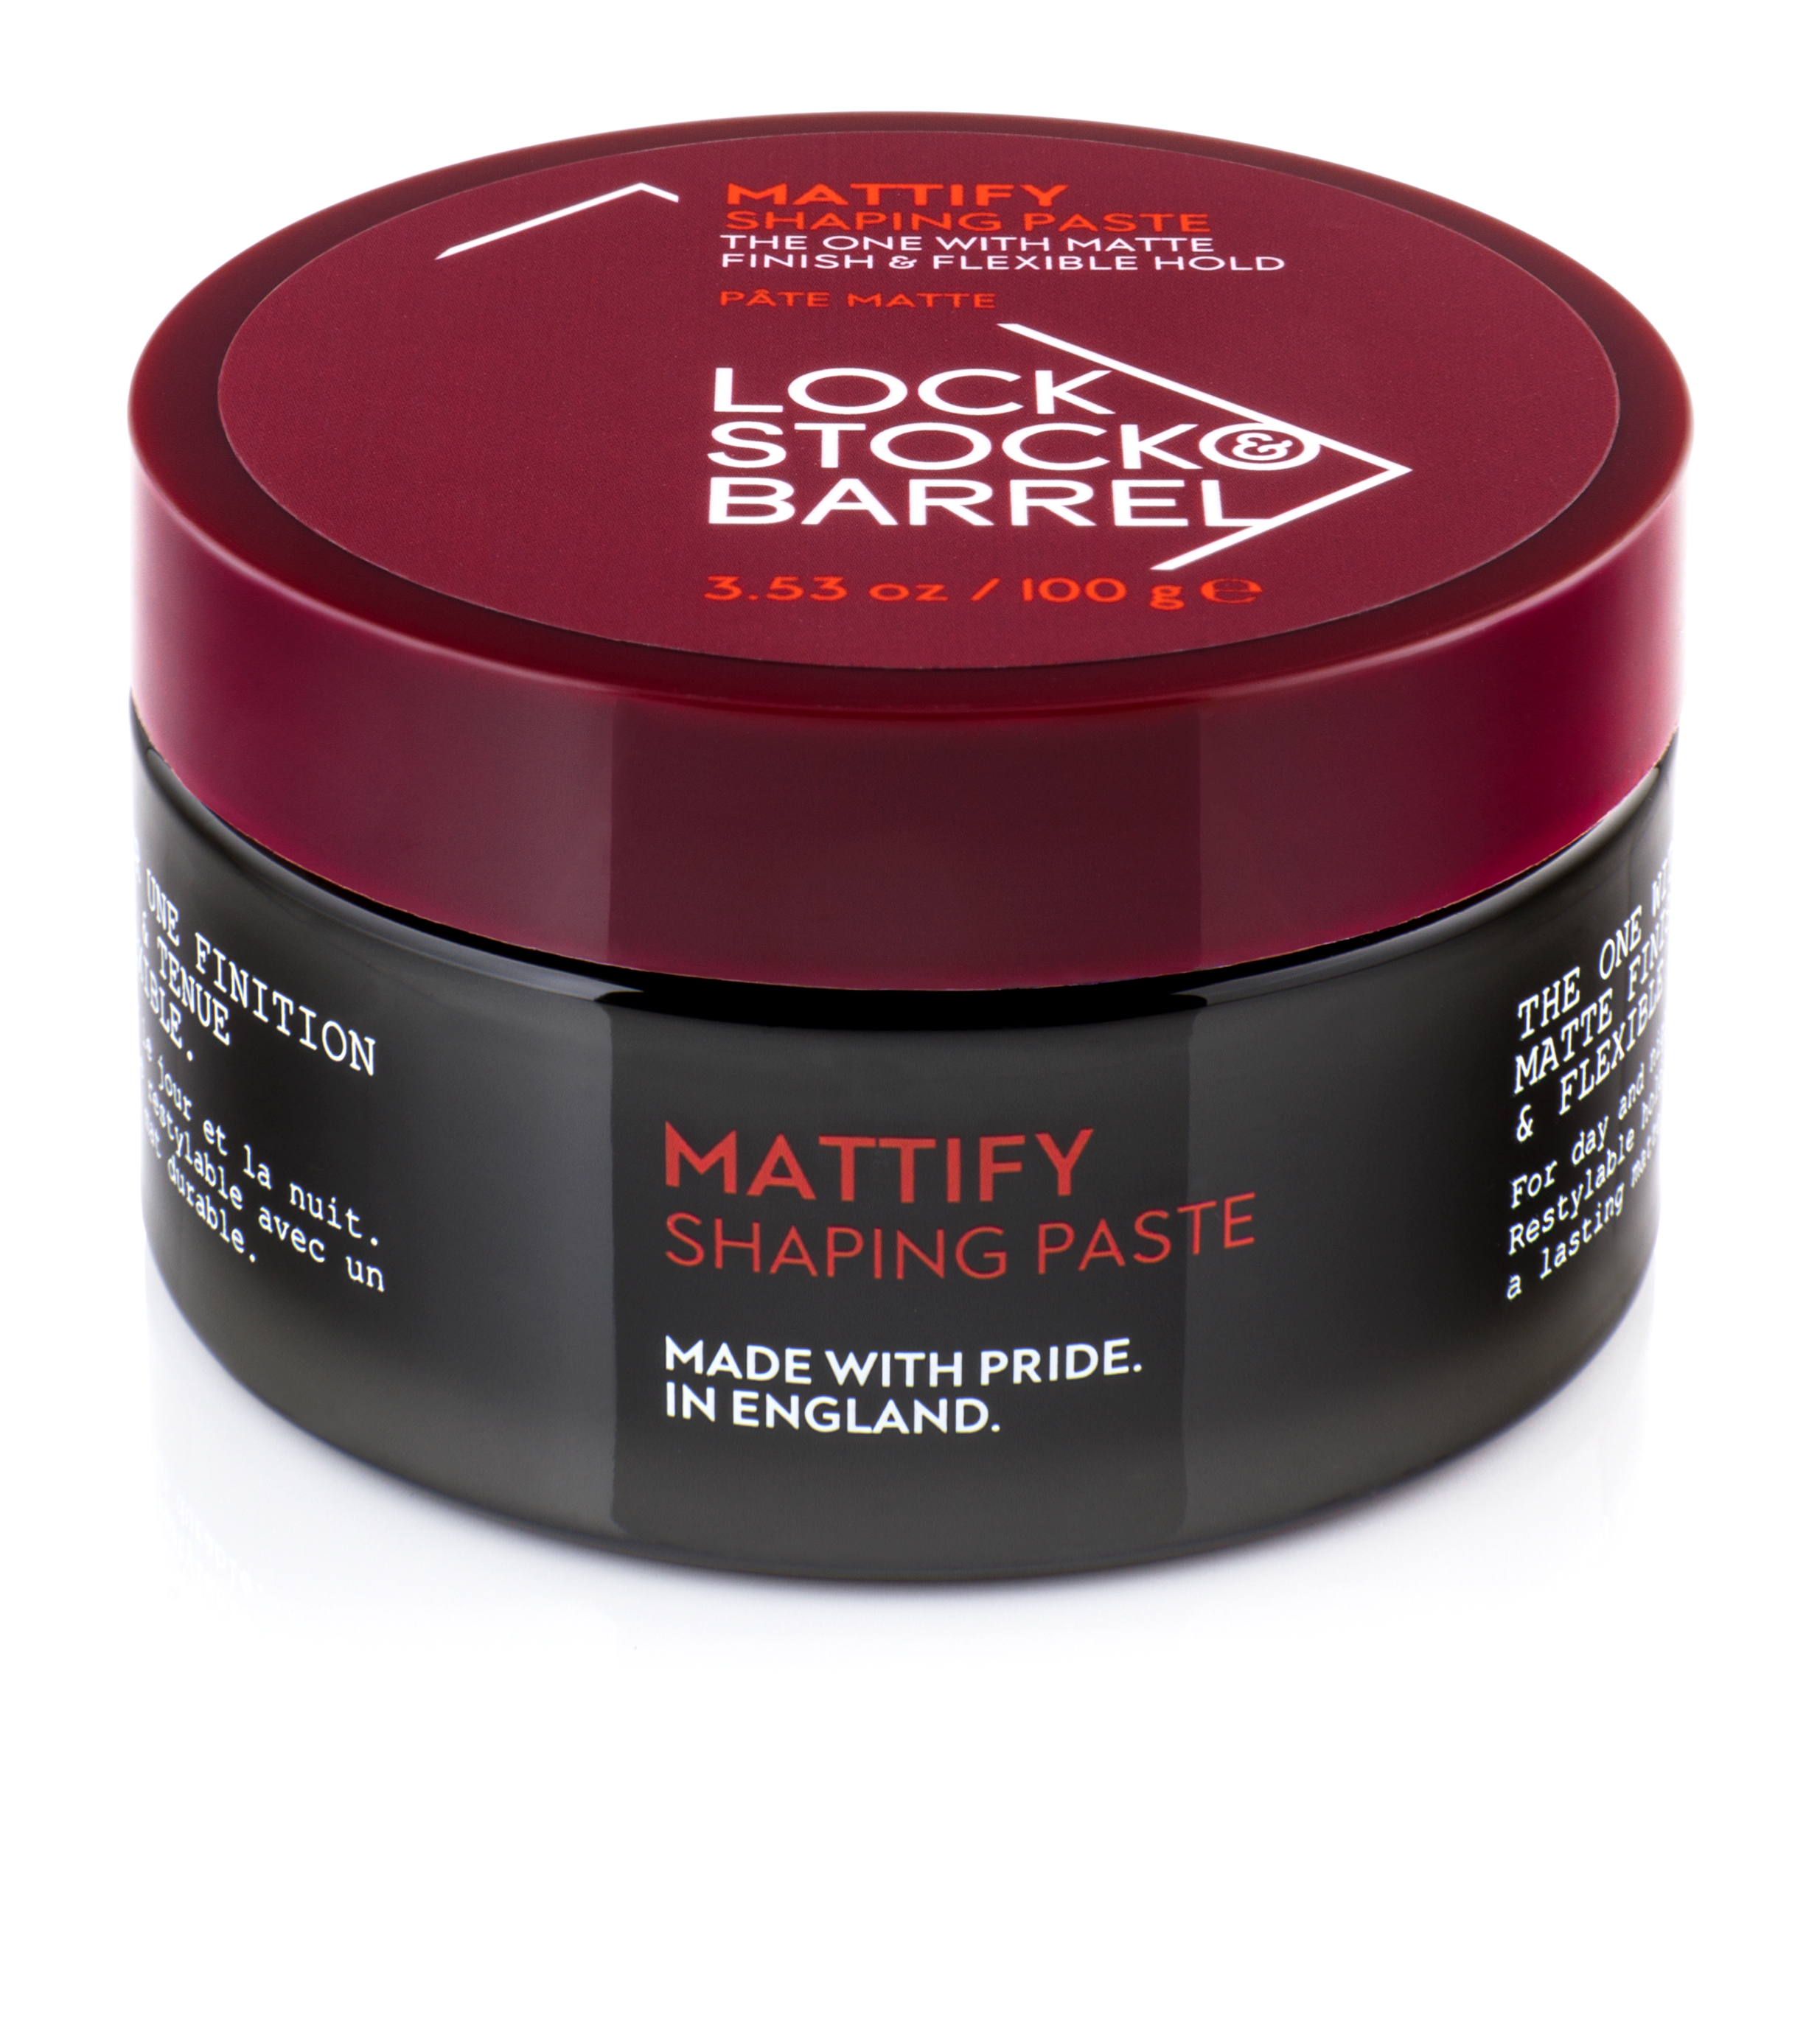 Паста для укладки волос Lock Stock  Barrel Mattify Shaping Paste матовая 100 г